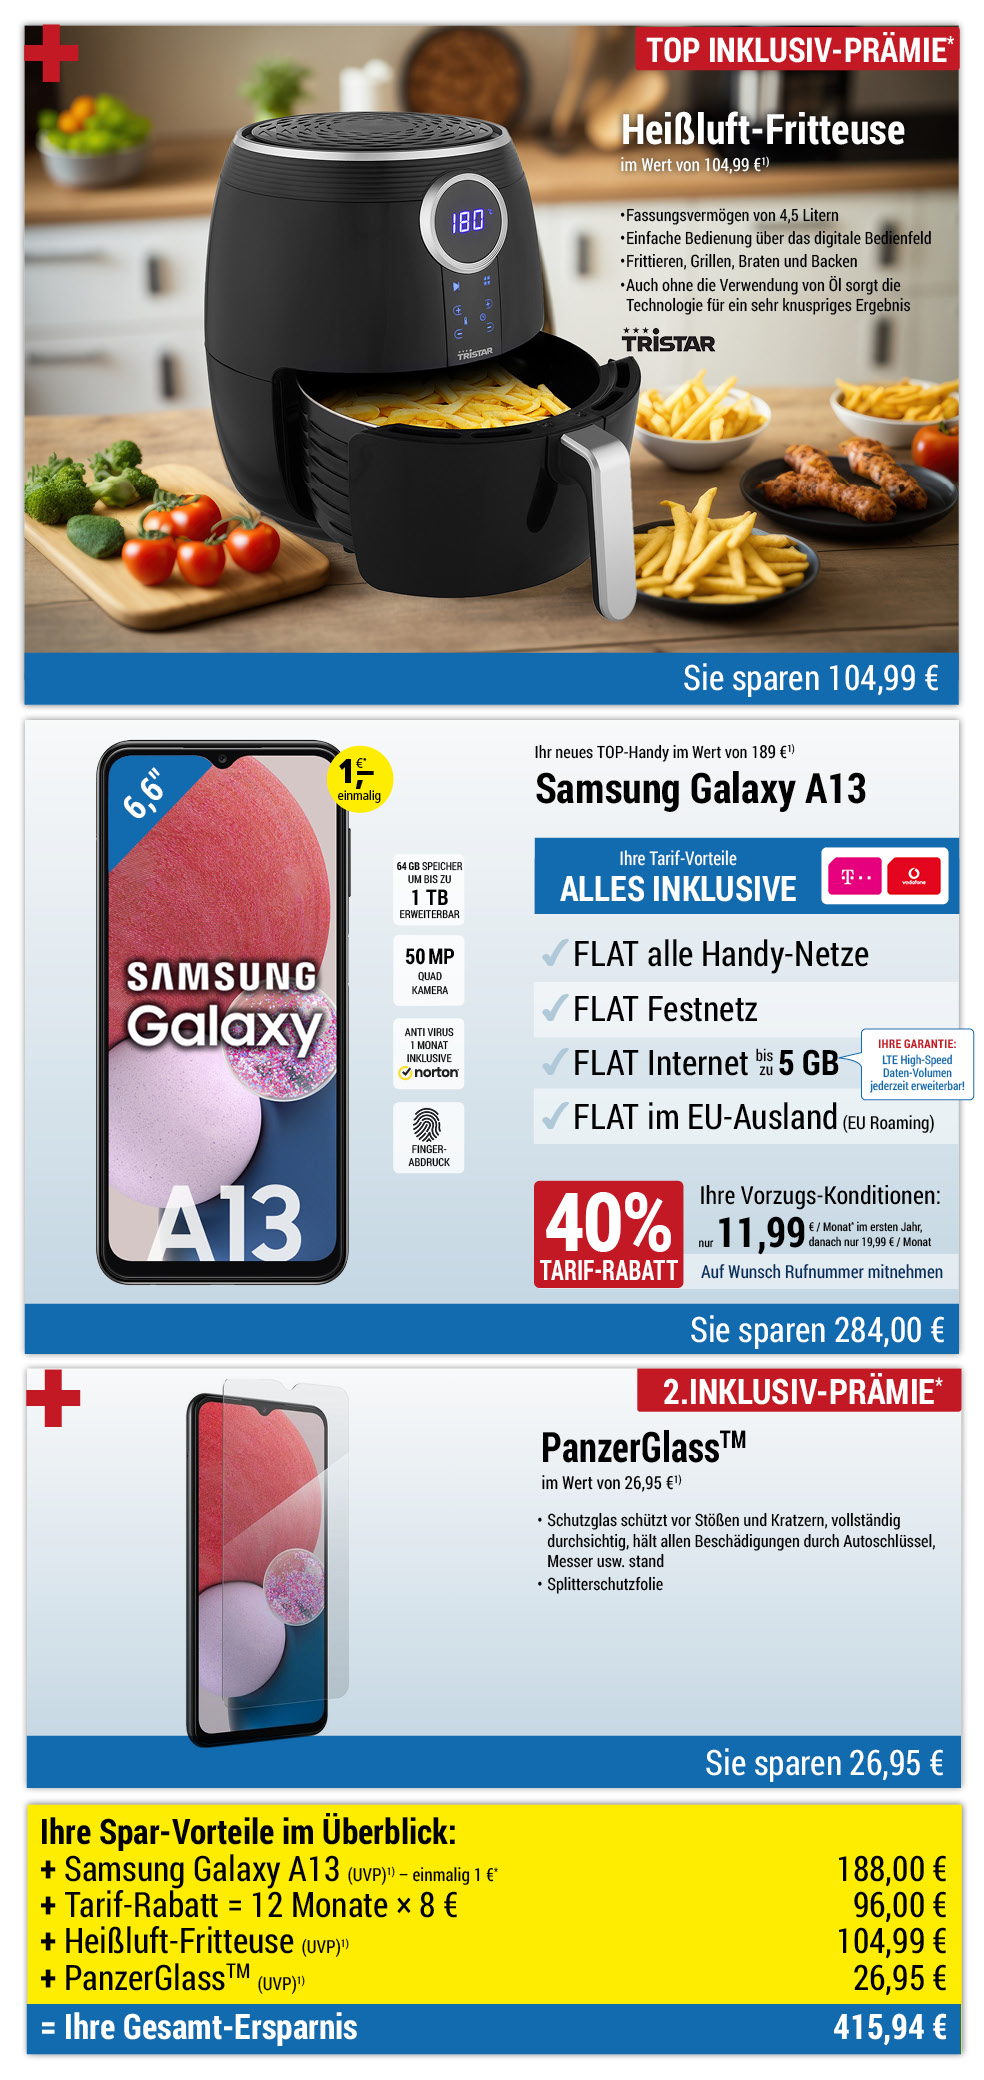 Für nur 1 €*: Samsung Galaxy A13 + Schutzfolie + Heißluft-Fritteuse mit ALL NET SPAR-Tarif für 11,99 € pro Monat im ersten Jahr